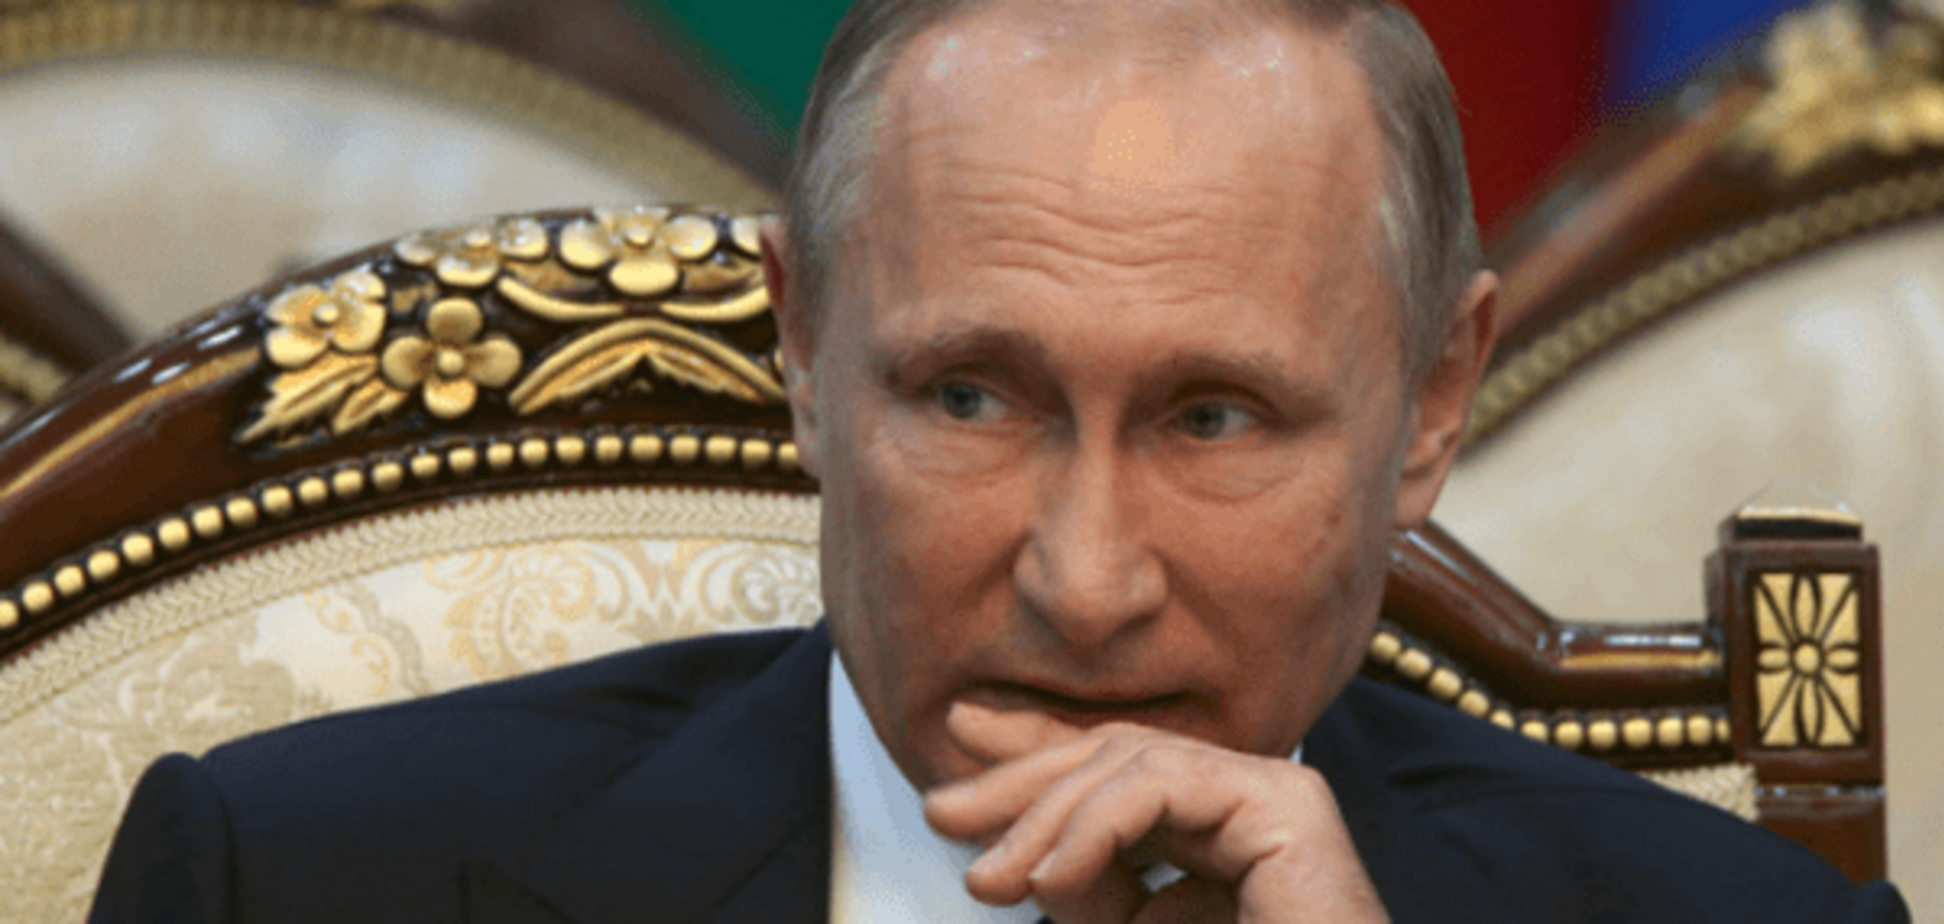 Путин обвинил США в попытке показать Россию 'империей зла'